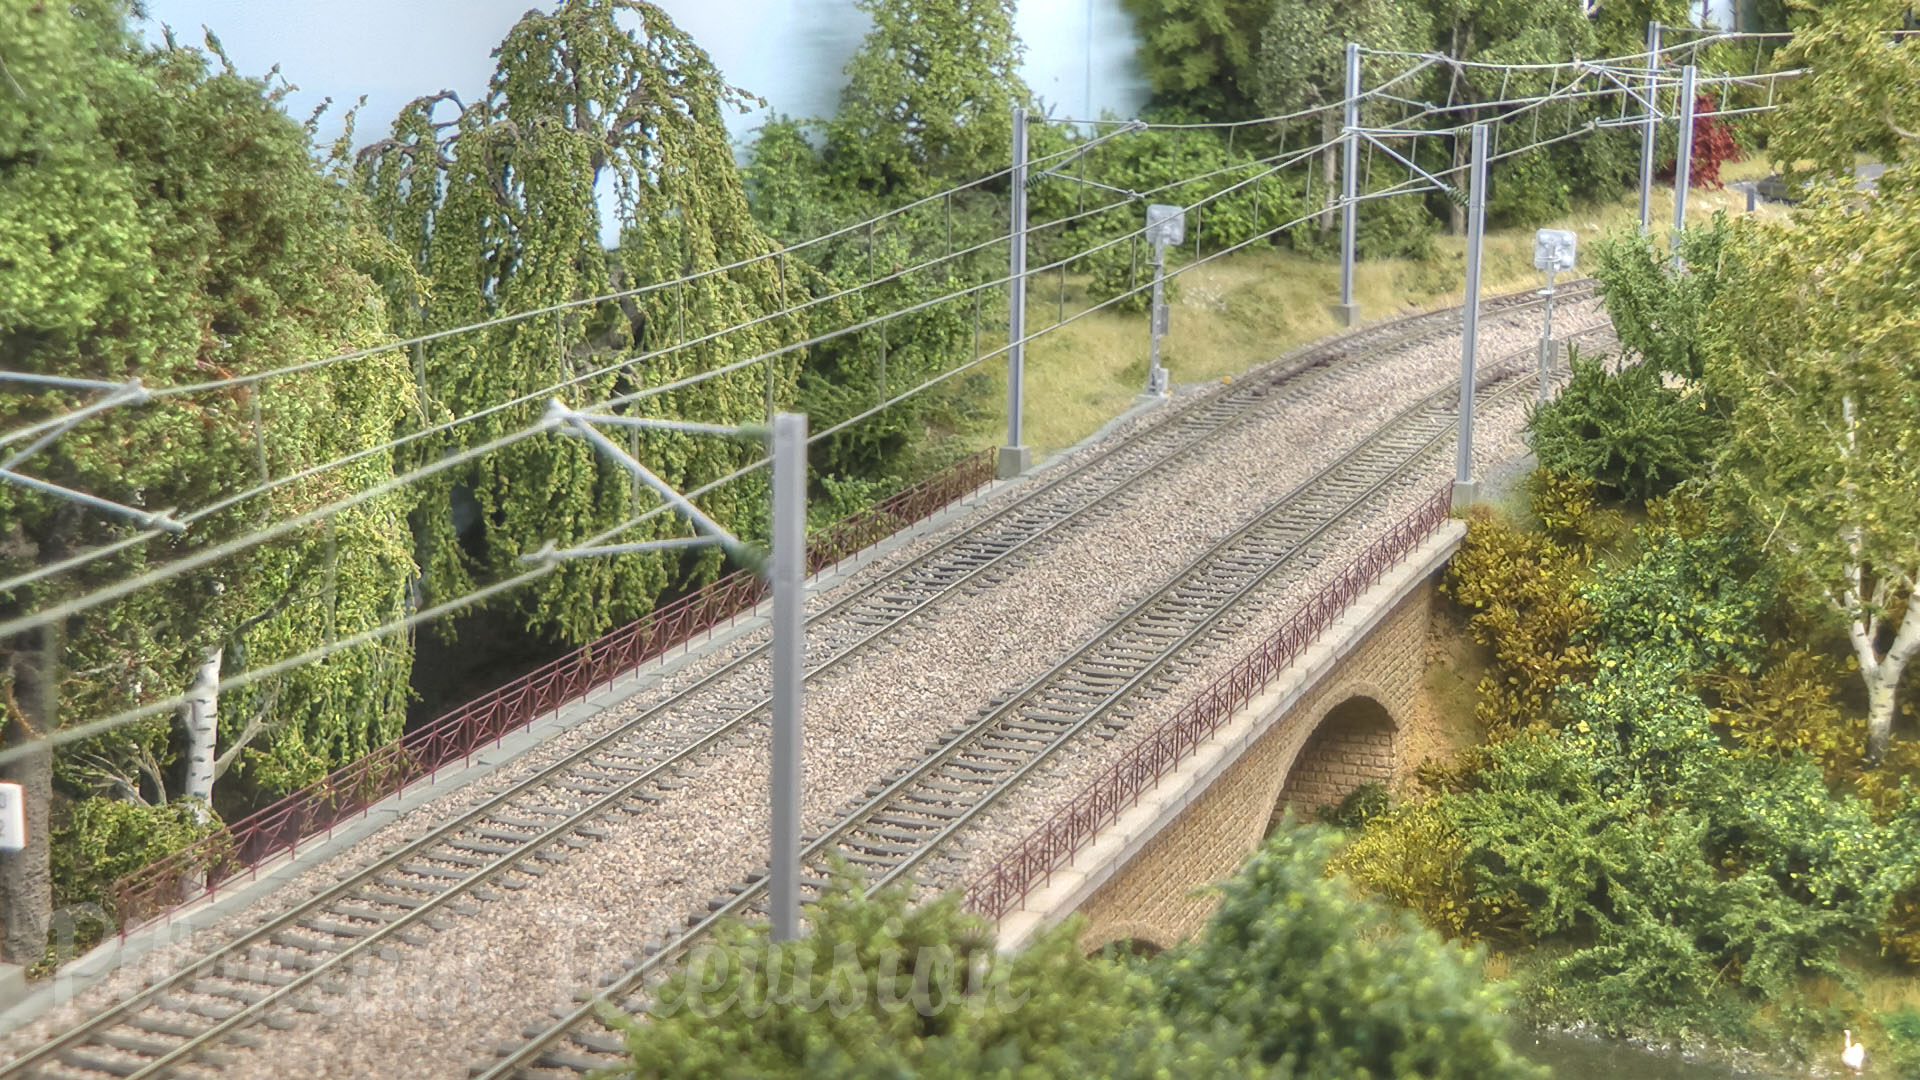 Bellissimo plastico ferroviario in scala HO con modellini di treni del trasporto ferroviario del Lussemburgo